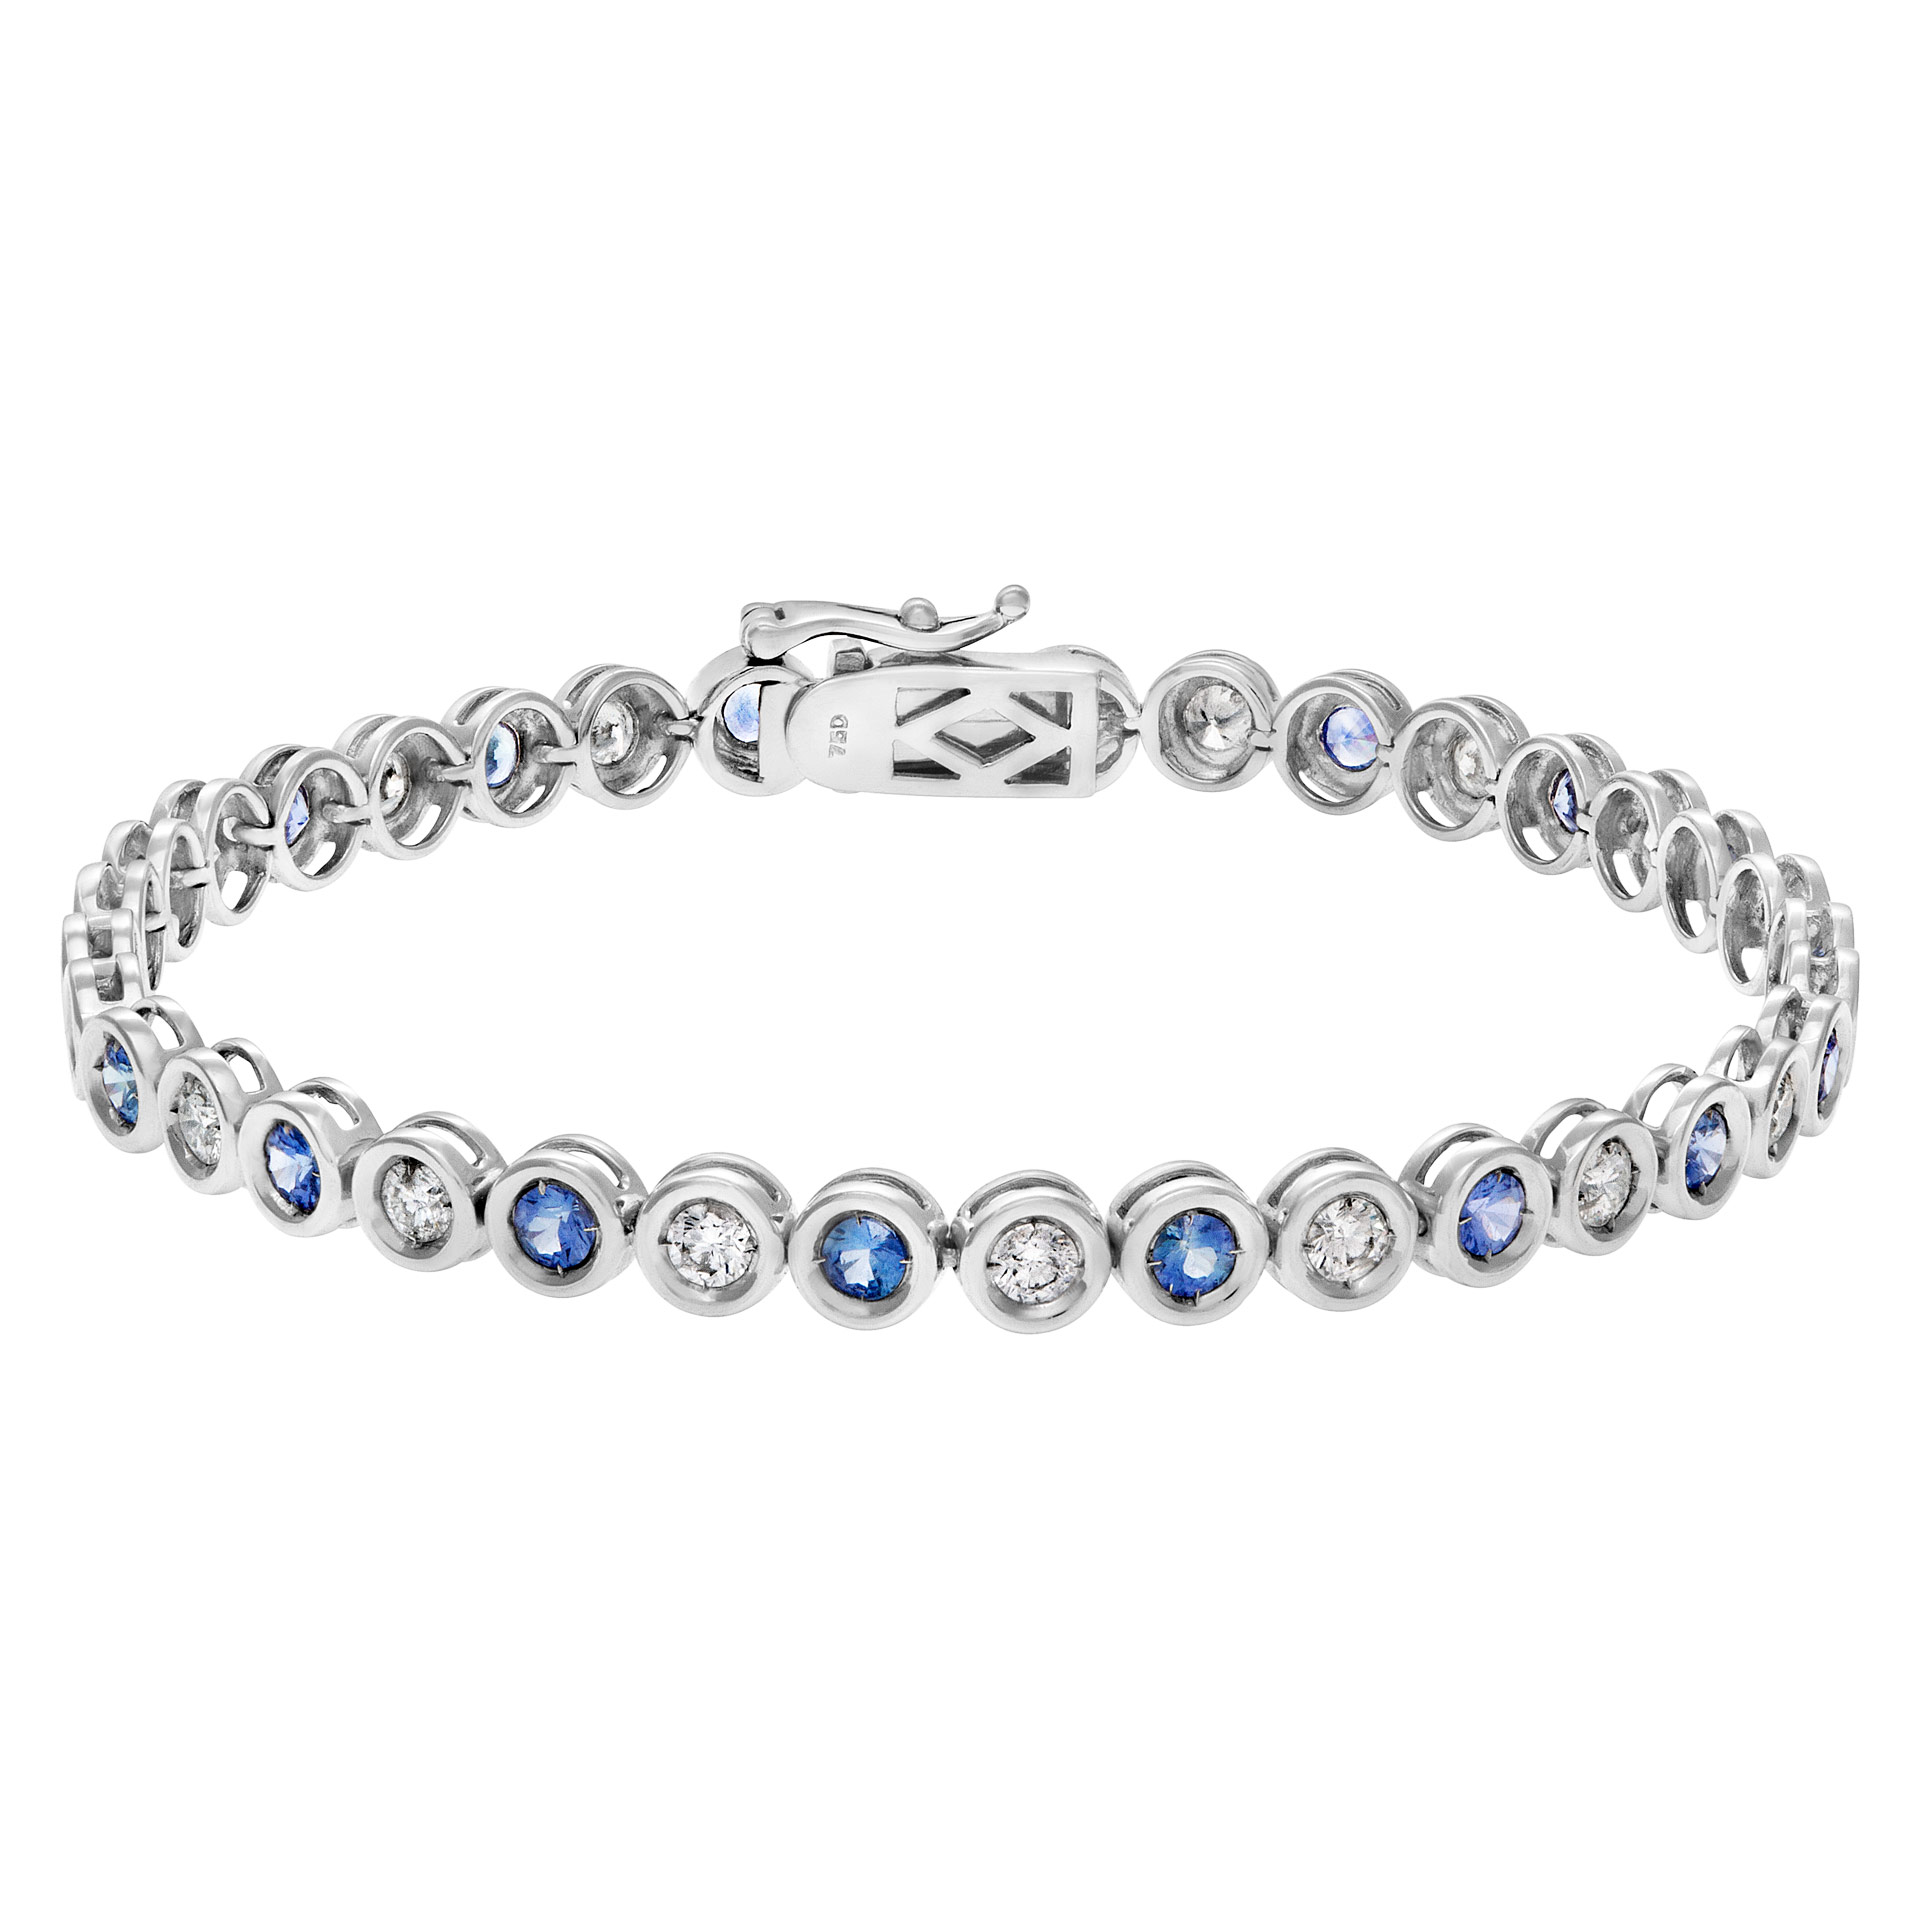 Bezel set blue sapphire and diamond line bracelet in 18k white gold.